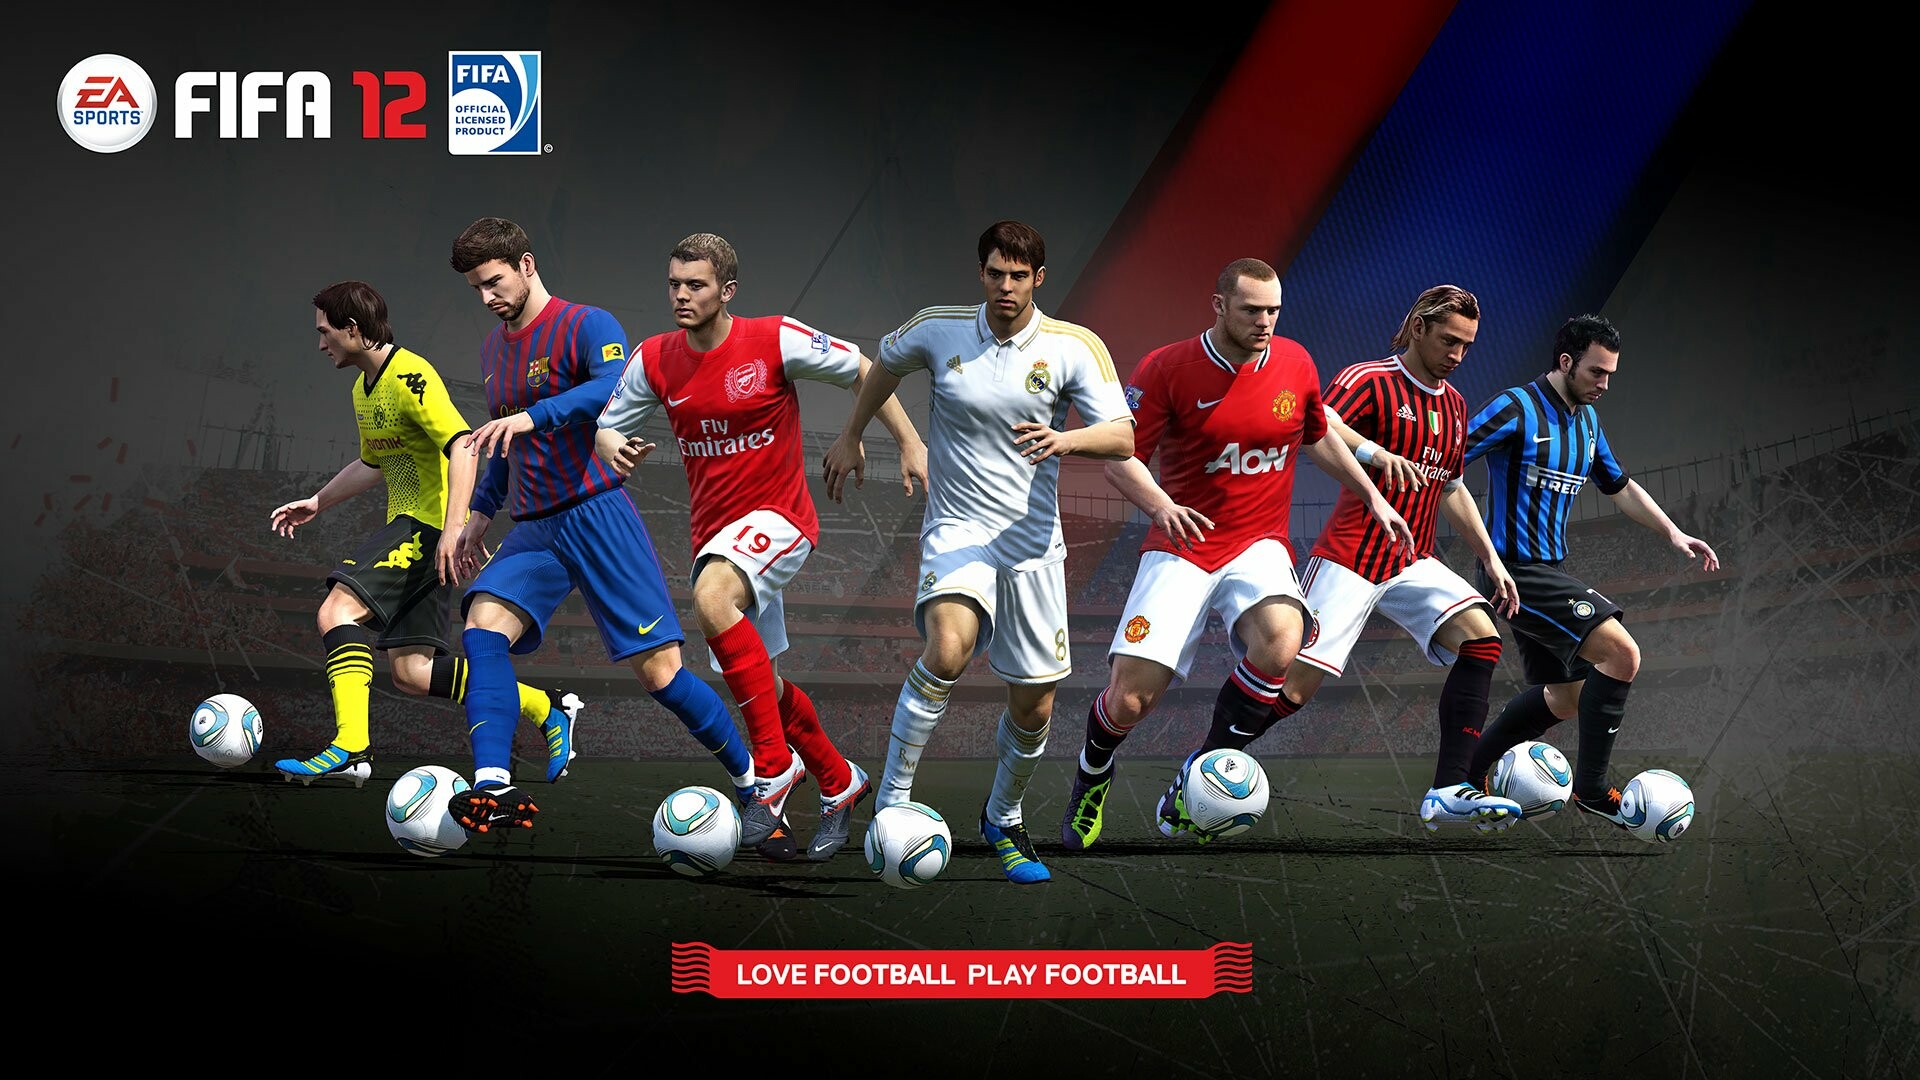 FIFA: 2012's installment, Released in September 2011, Football simulator. 1920x1080 Full HD Wallpaper.